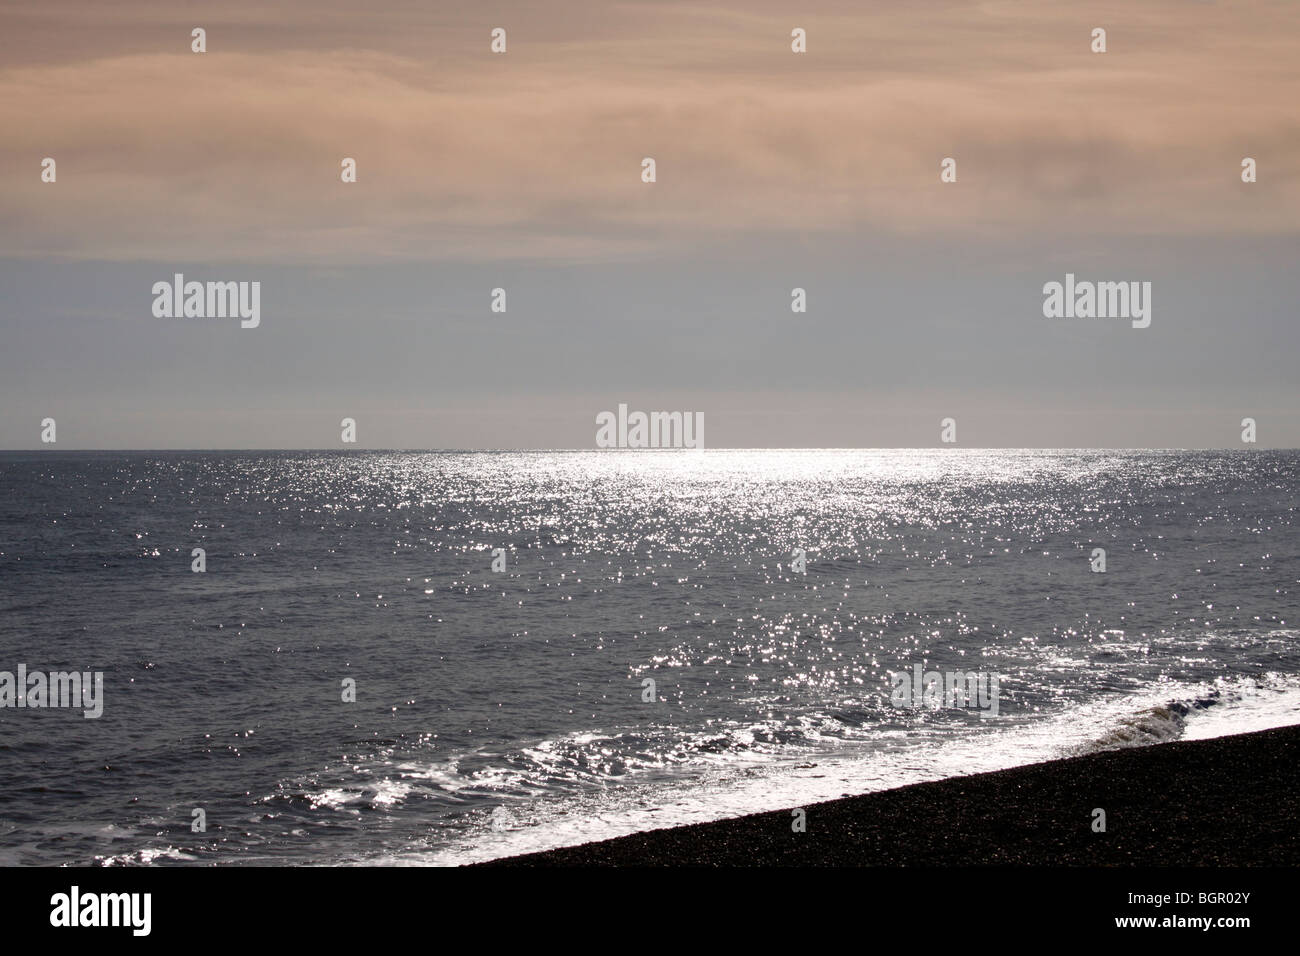 EAST ANGLIAN ALBA SEASCAPE A ALDEBURGH NEL SUFFOLK REGNO UNITO. Foto Stock